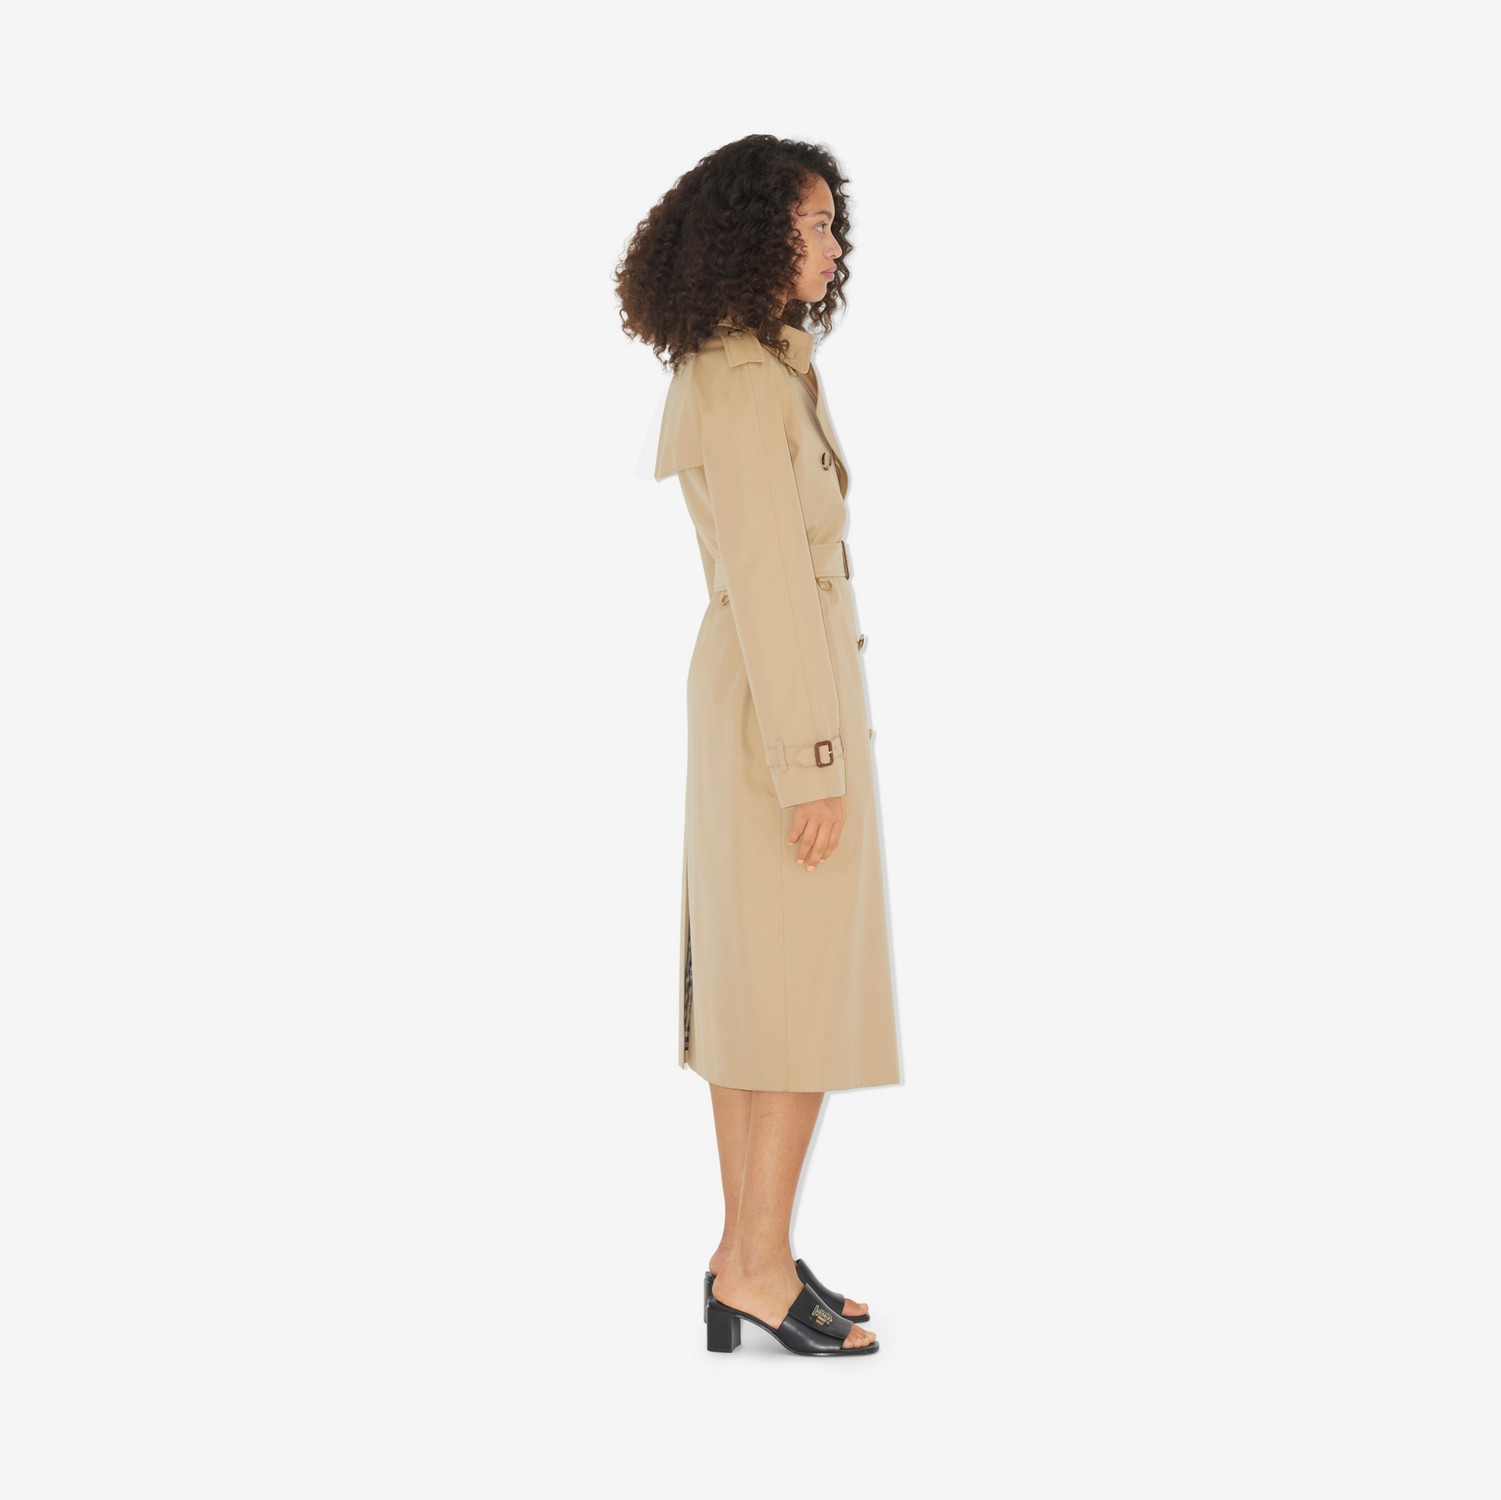 滑铁卢版型 – 长款 Heritage Trench 风衣 (蜂蜜色) - 女士 | Burberry® 博柏利官网